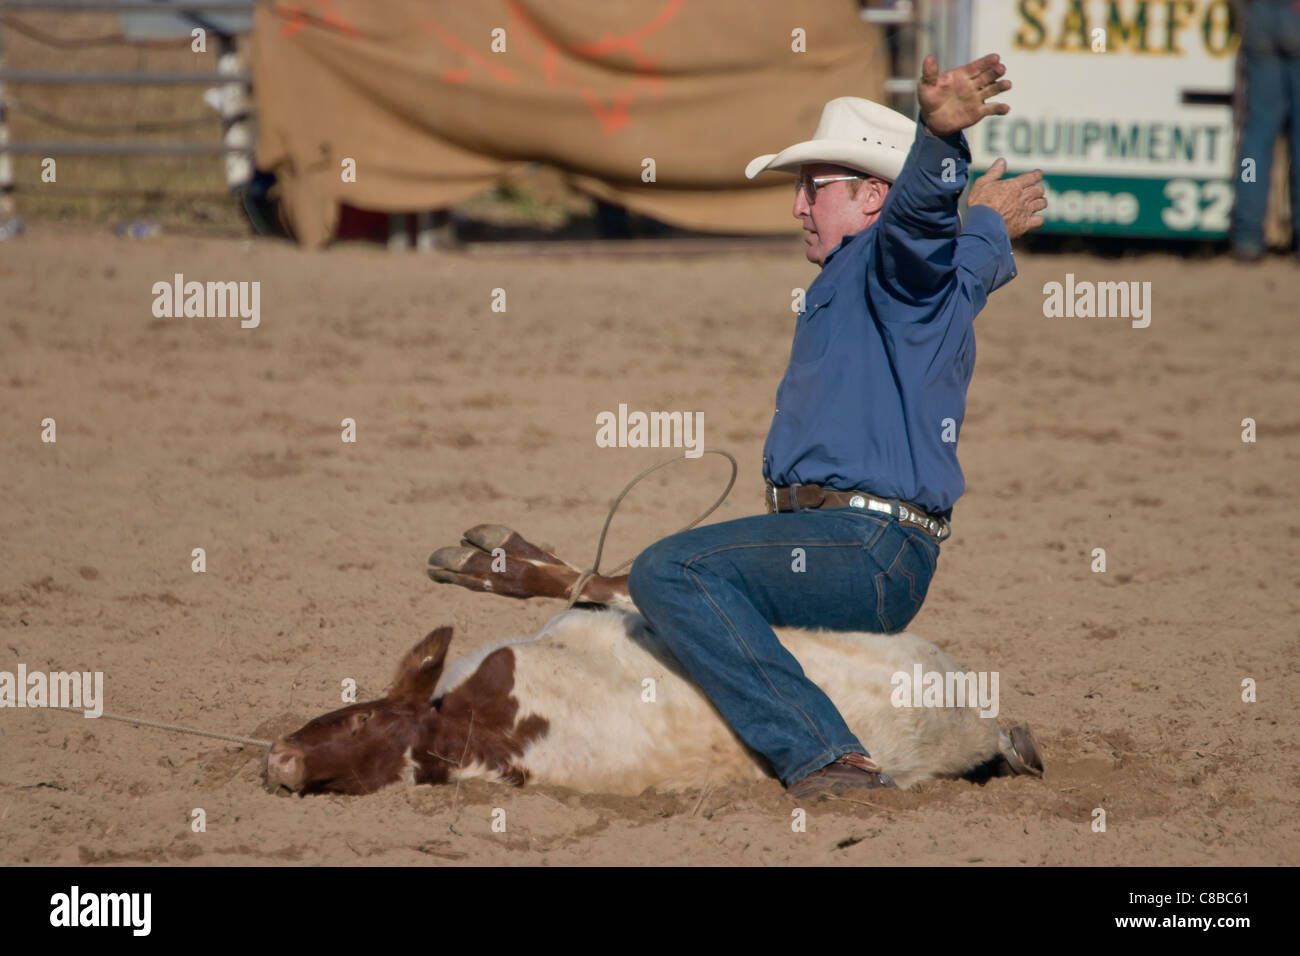 Rodeo calf roping winner Stock Photo Alamy